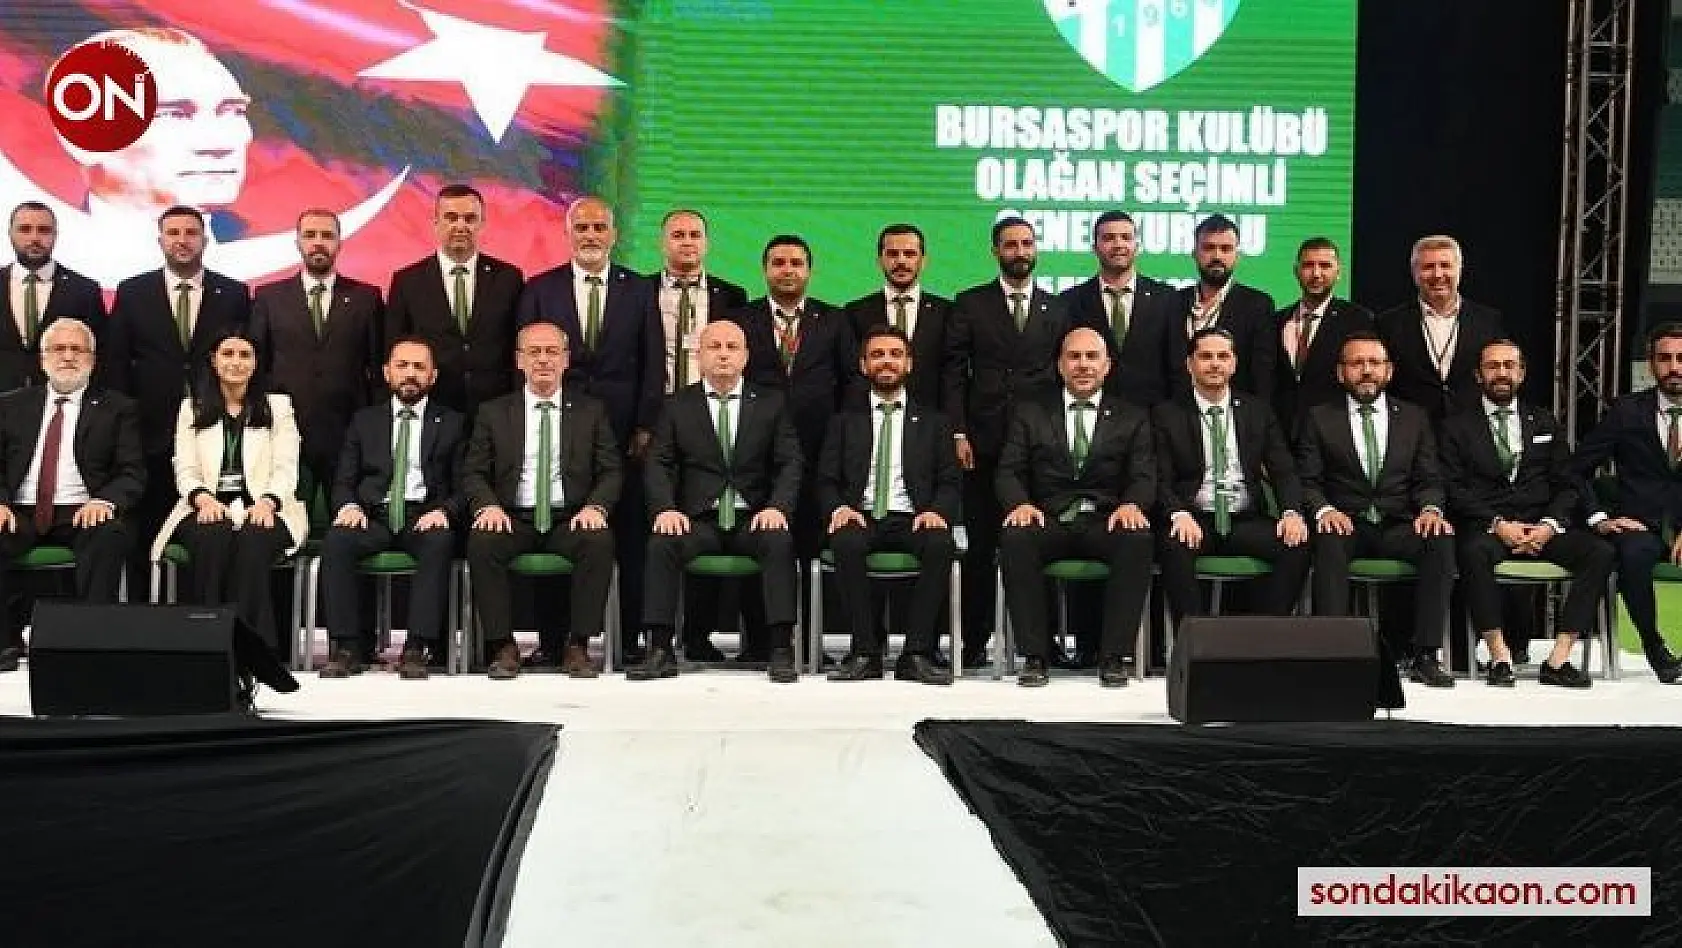 Bursaspor Kulübü'nde yeni yönetimin görev dağılımı yapıldı